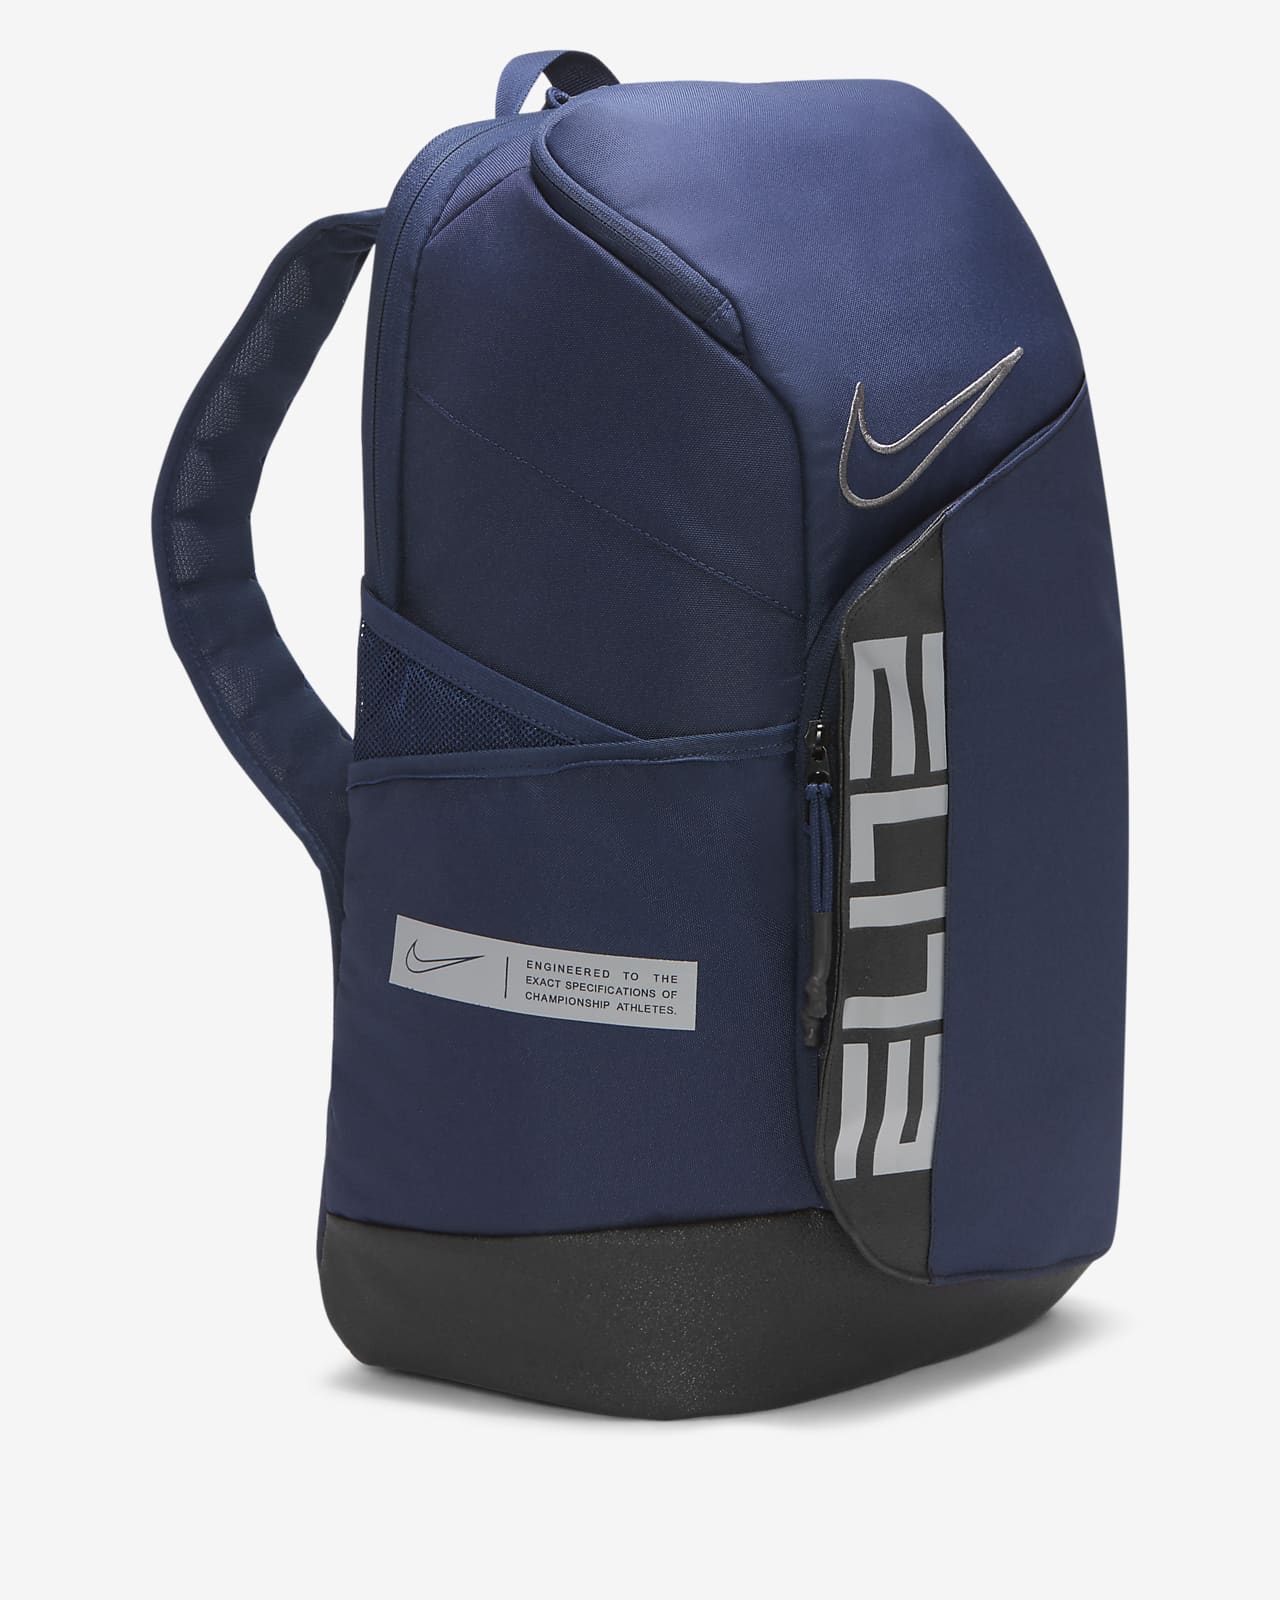 Nike Team USA Elite Pro Basketball Backpack | lupon.gov.ph